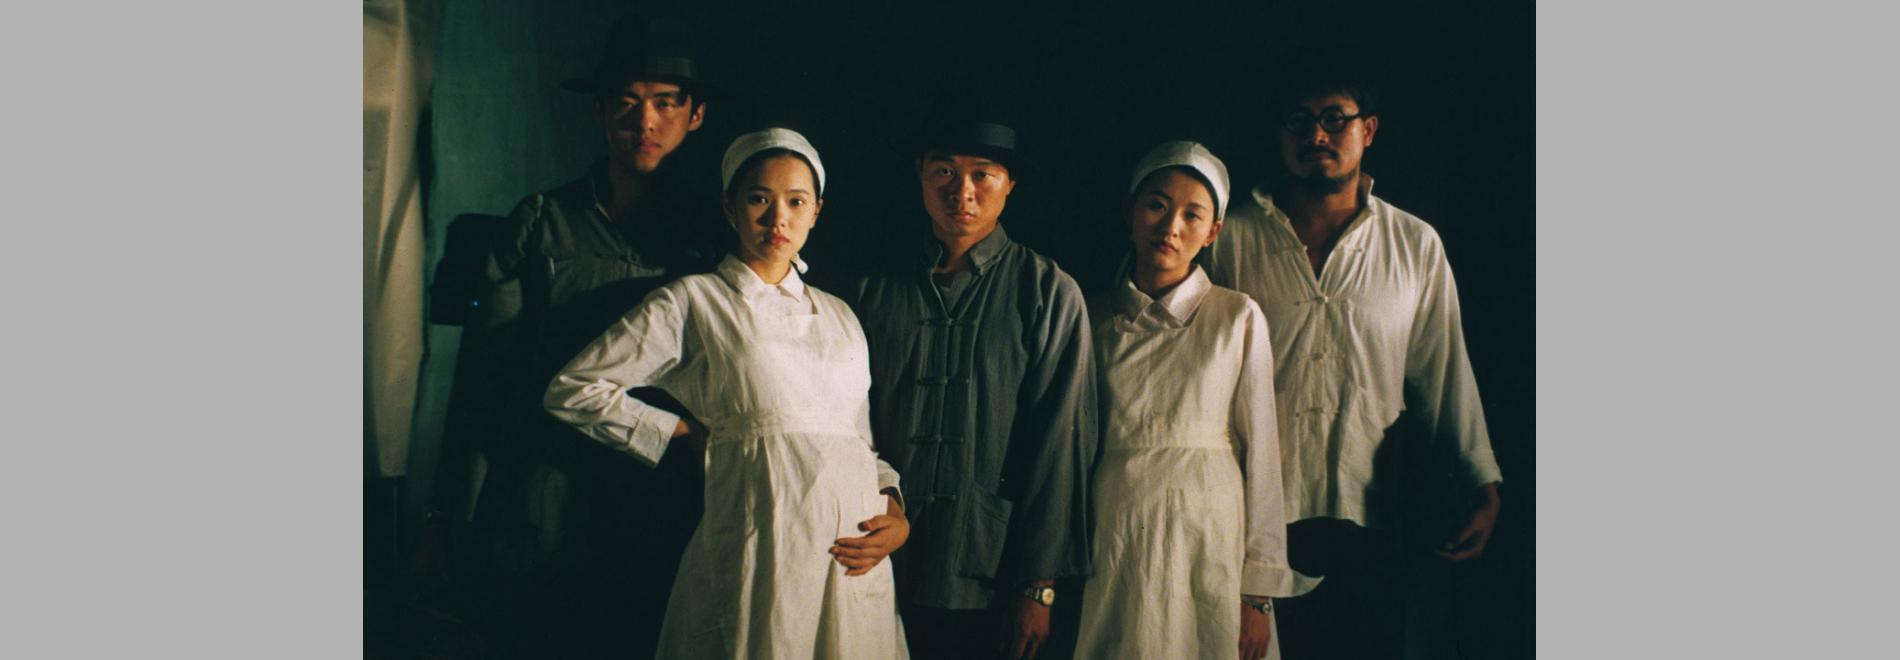 Hao nan hao nu / Homes bons, dones bones (Hou Hsiao-hsien, 1995)